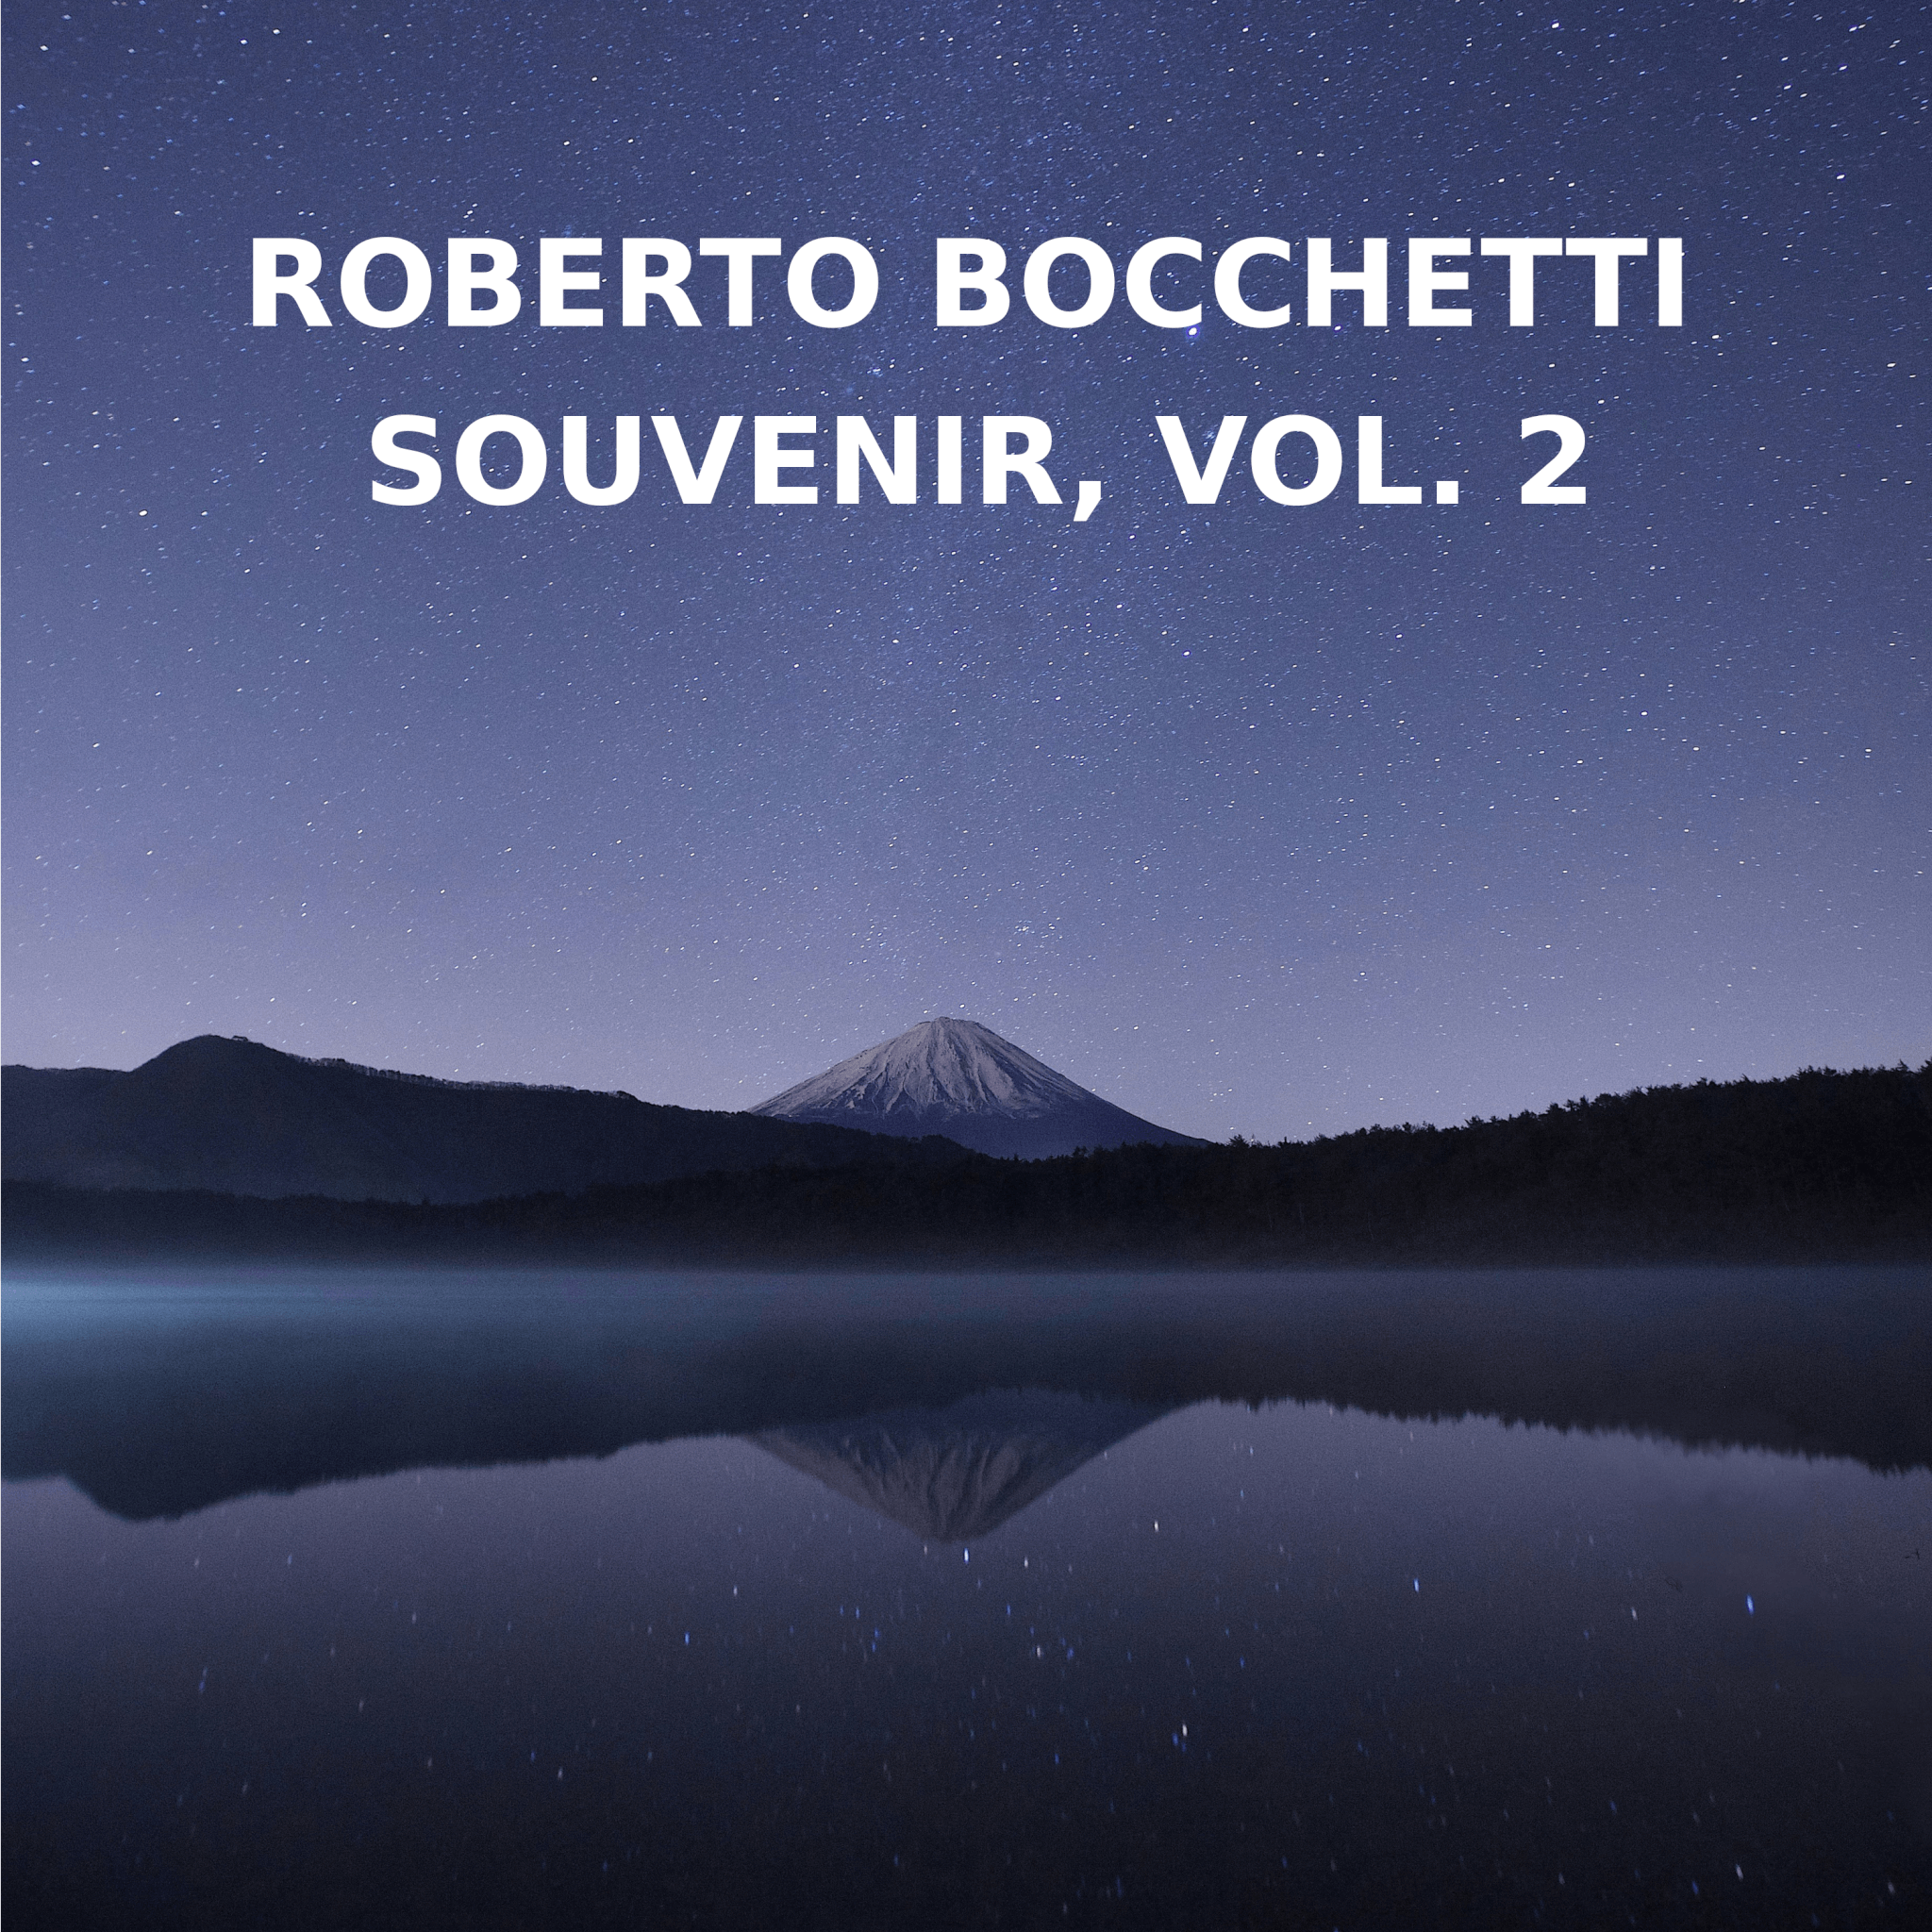 Appena pubblicati due remix strumentali del singolo "Souvenir" di Roberto Bocchetti